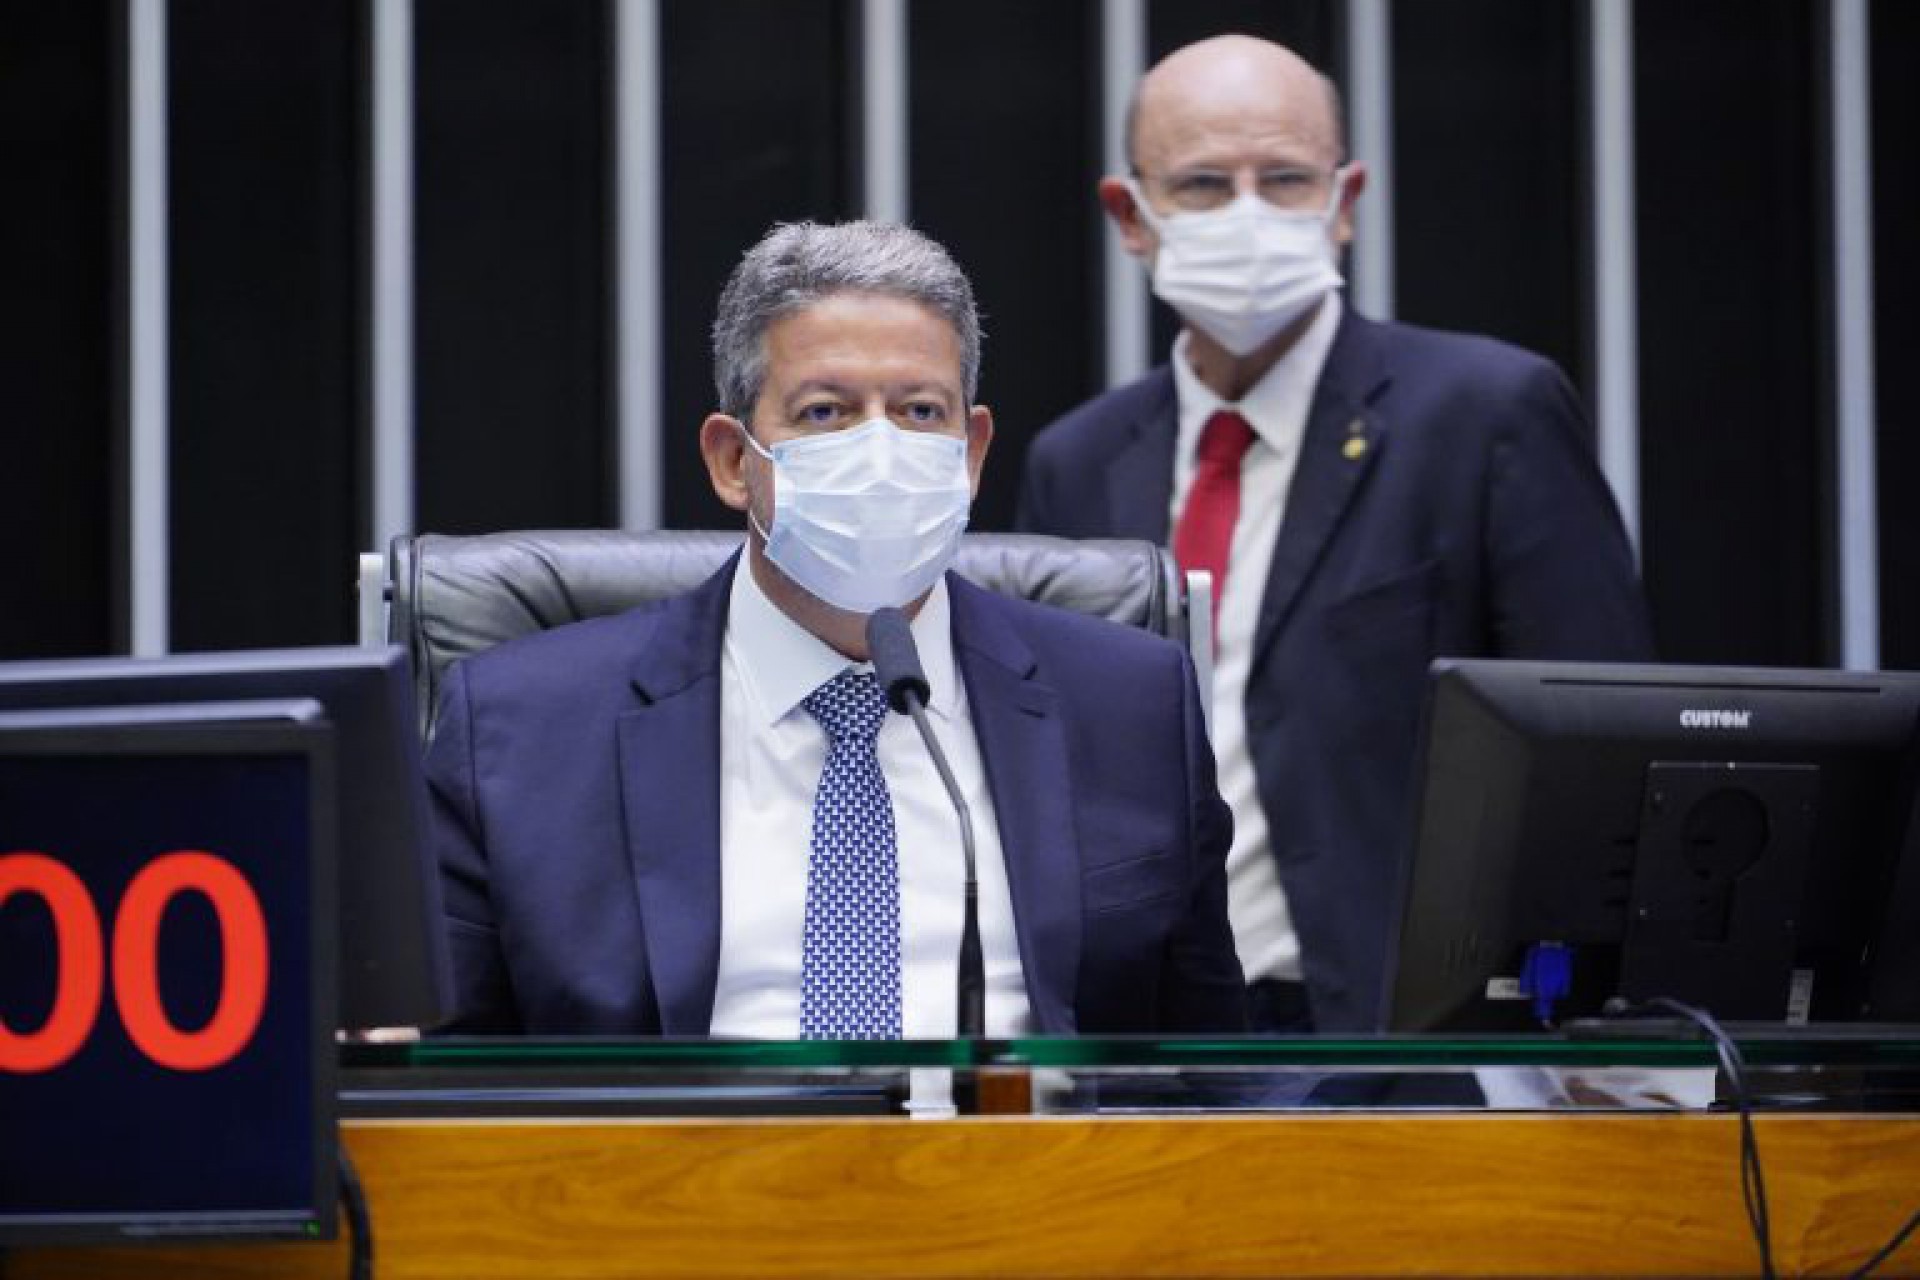 O deputado Arthur Lira, presidente da Câmara dos Deputados, antes da votação da PEC dos Precatórios (Foto: Pablo Valadares/Câmara dos Deputados)